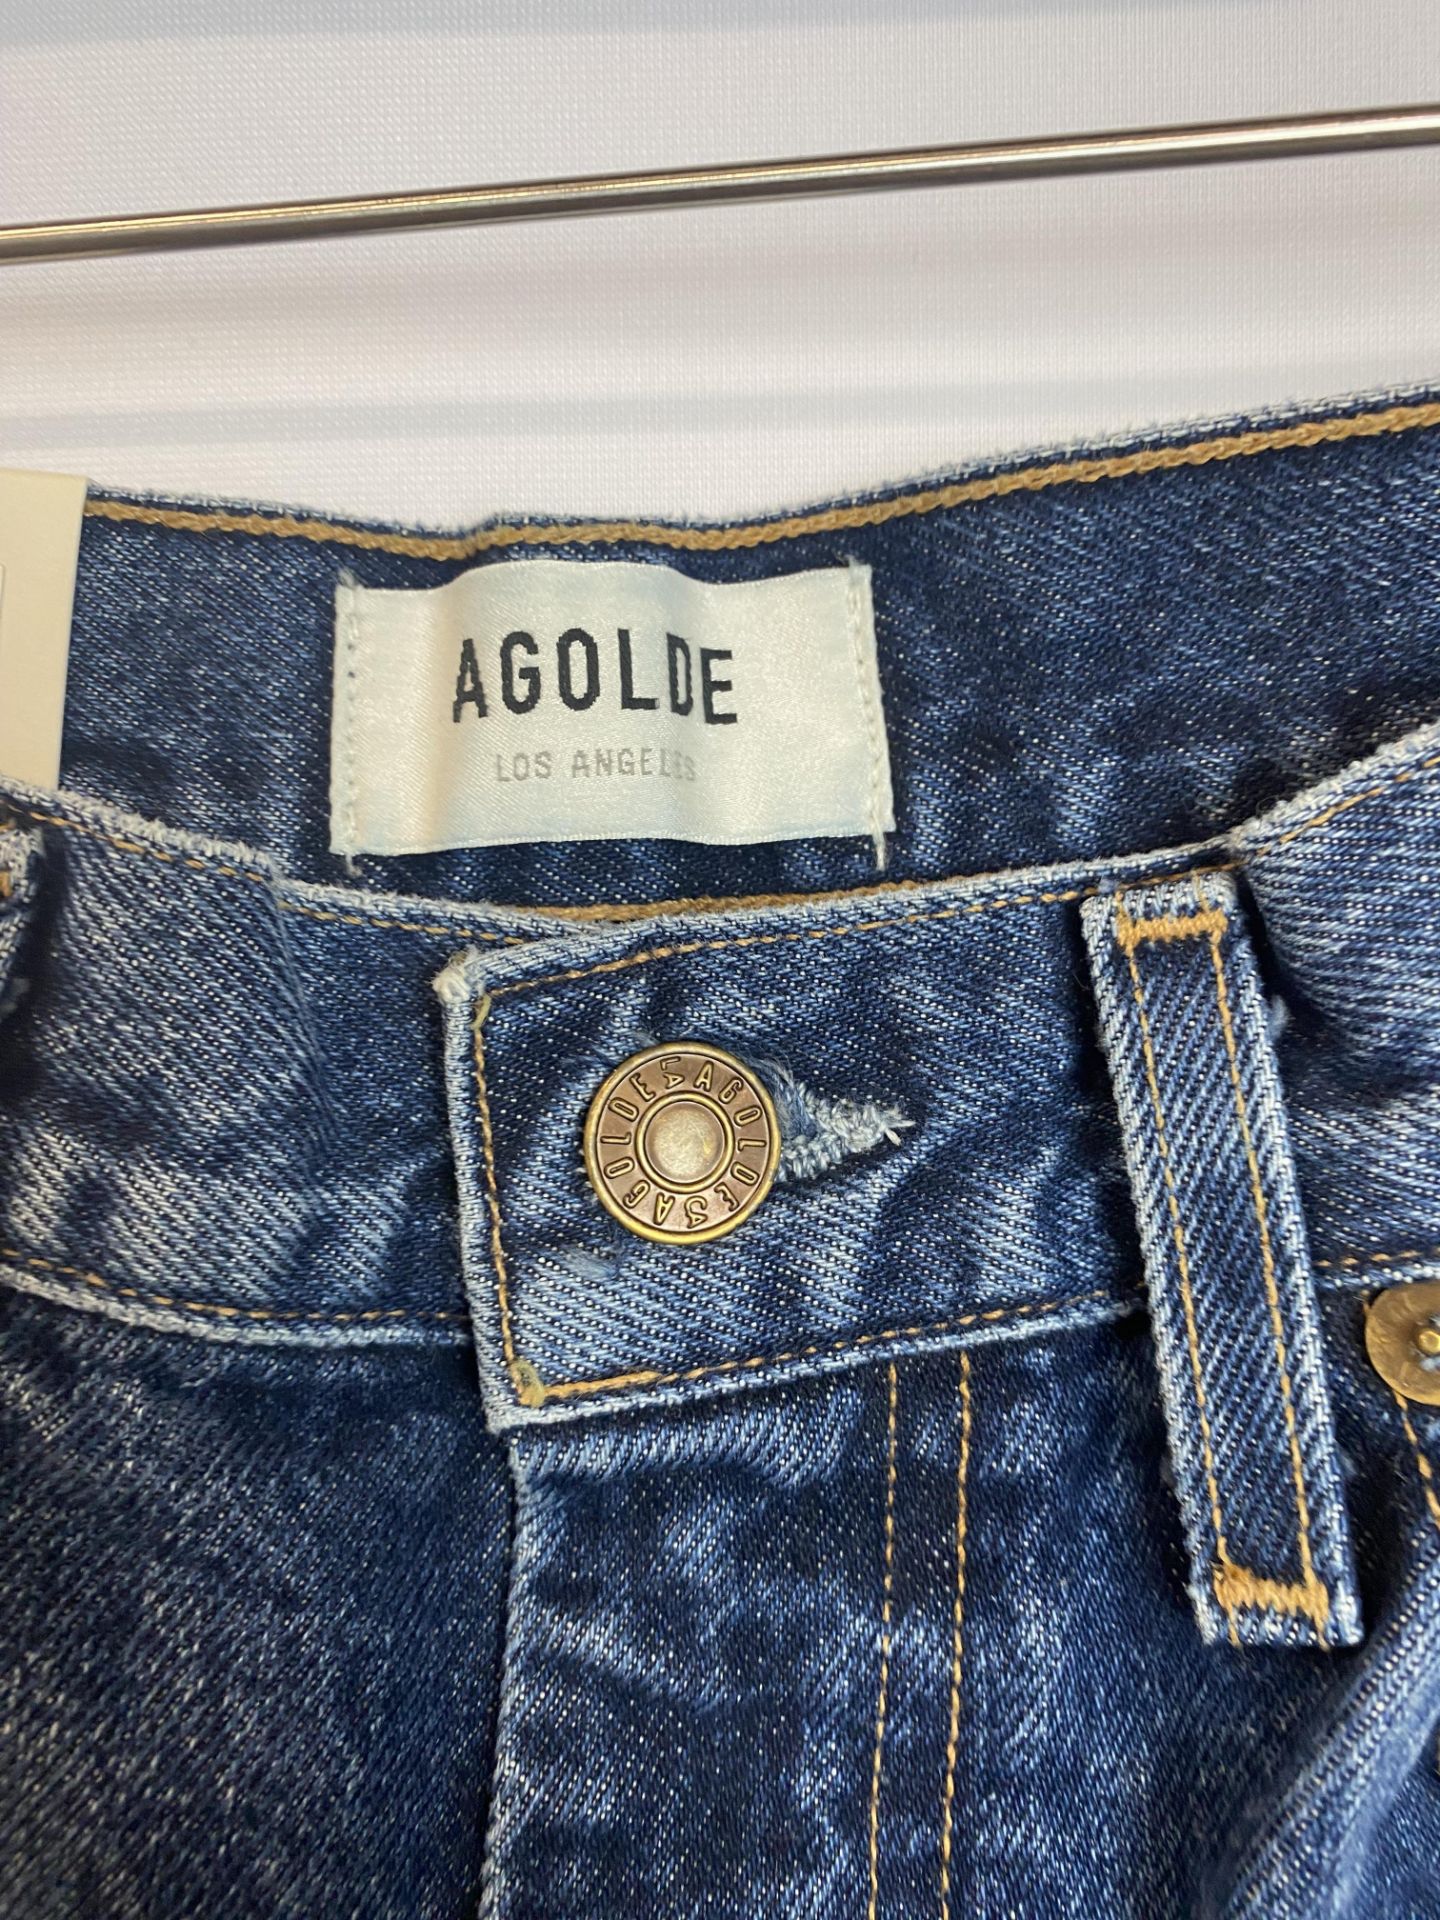 Agolde Pinch Waist High Rise Kick Denim Jean, Size: 25, Original Retail Price: $198 - Bild 4 aus 4